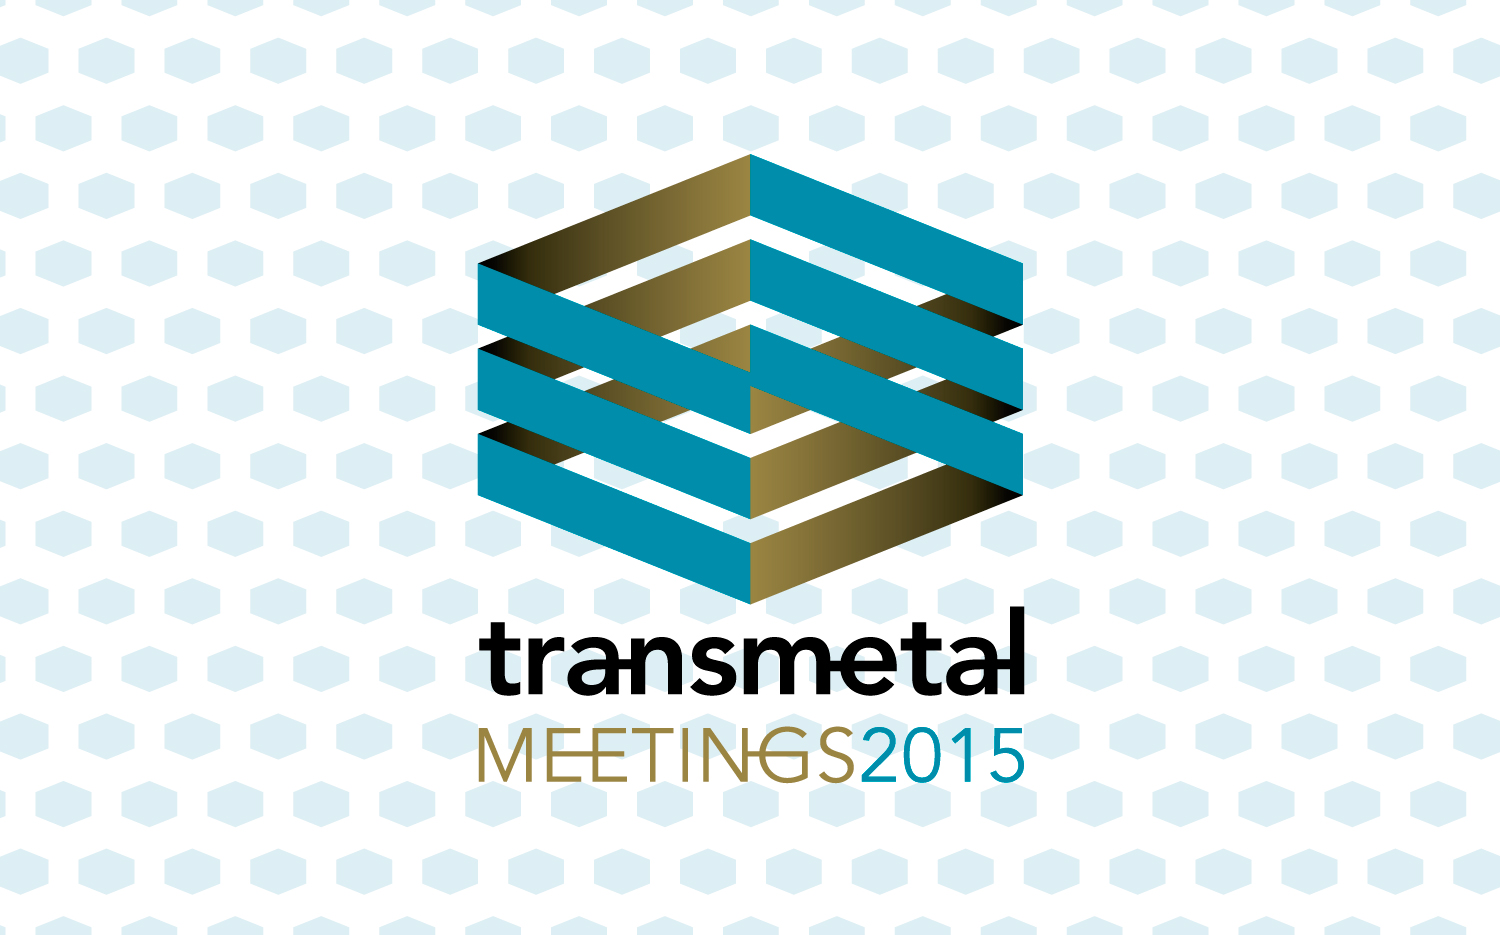 Diseño de la identidad corporativa del Congreso Transmetal Meetings